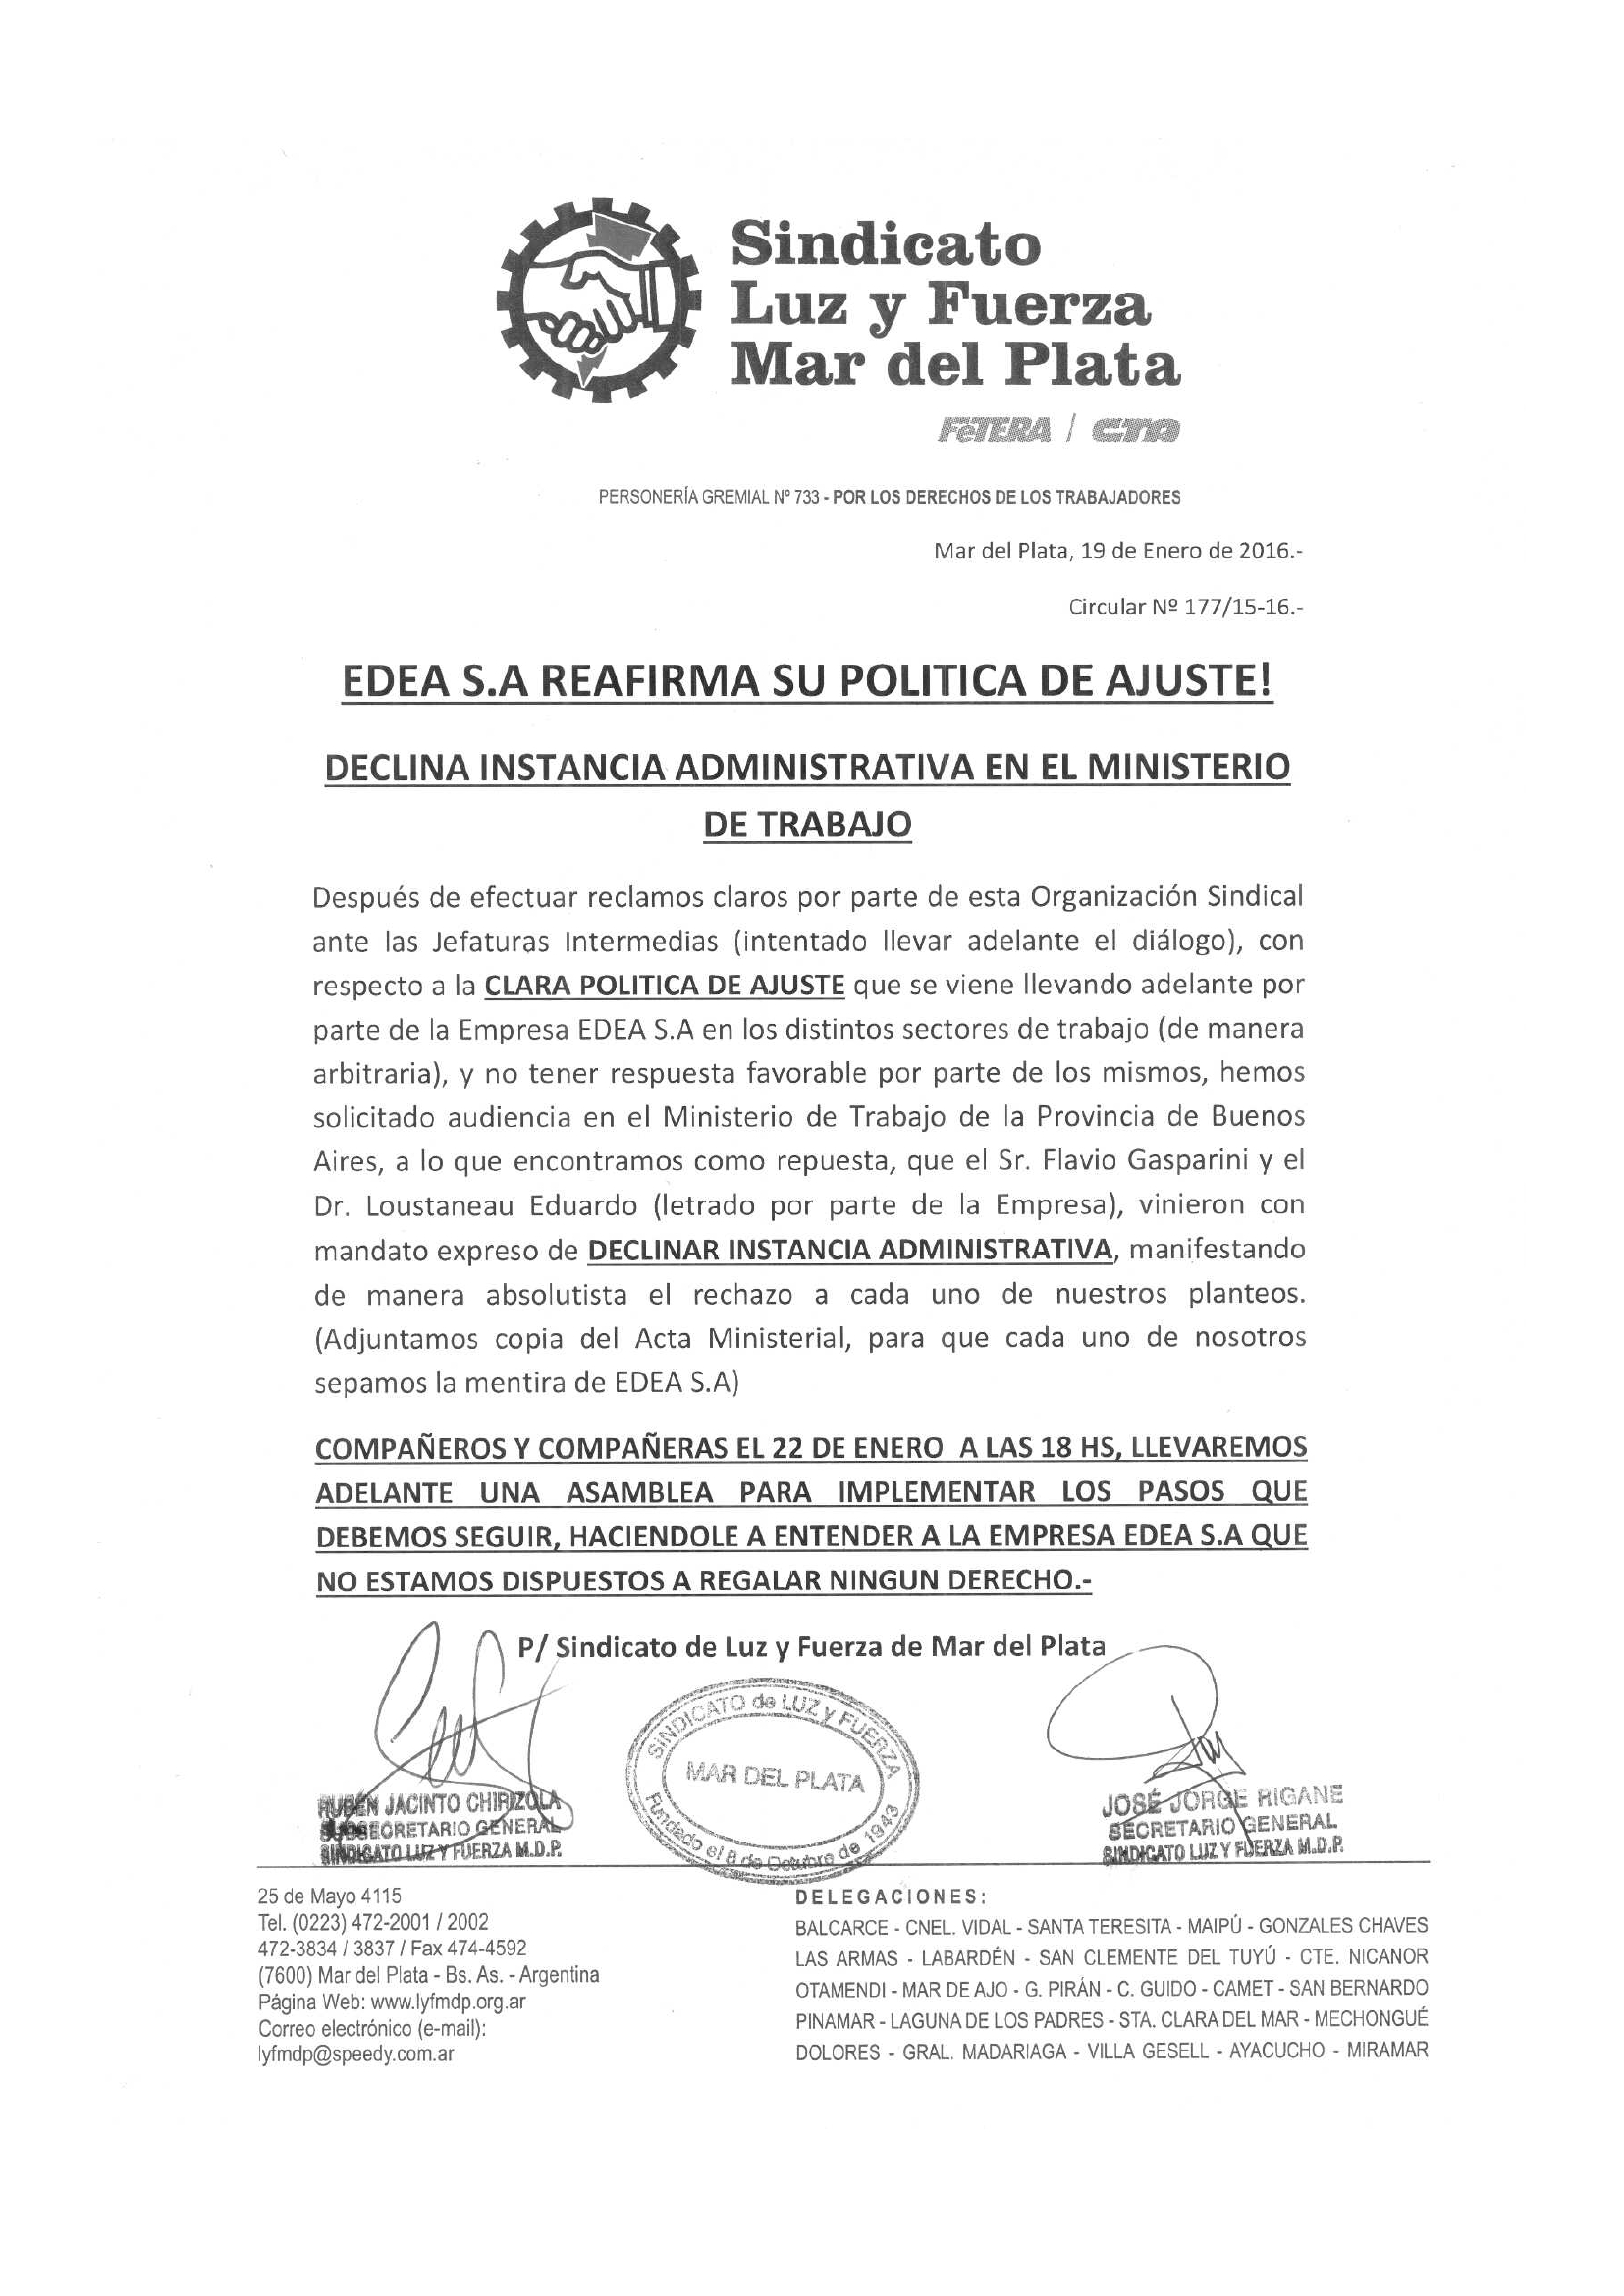 CIRCULAR 178 (15-16) REAJUSTE BOLSA DE TRABAJO EN MAR DEL PLATA